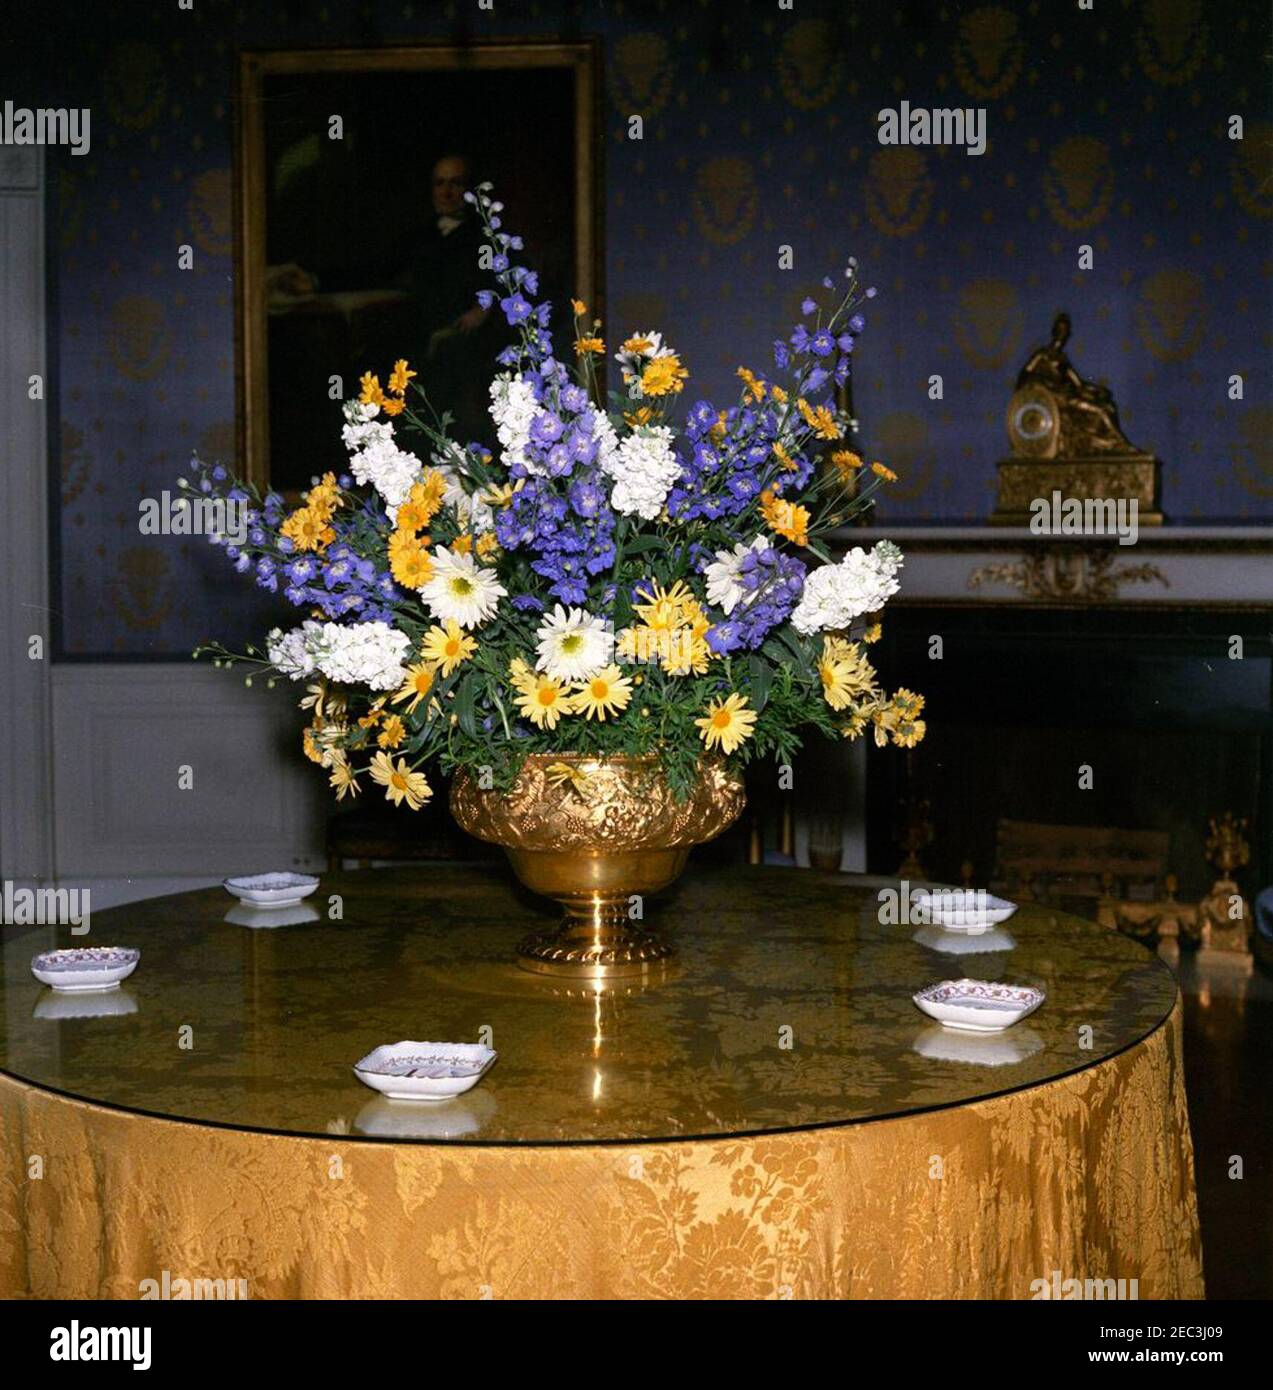 Mittagessen für kalifornische Herausgeber und Verleger, 1:00pm Uhr. Blick auf ein Blumenarrangement im Blue Room für ein Mittagessen zu Ehren von Redakteuren und Verlegern aus Kalifornien. White House, Washington, D.C. Stockfoto